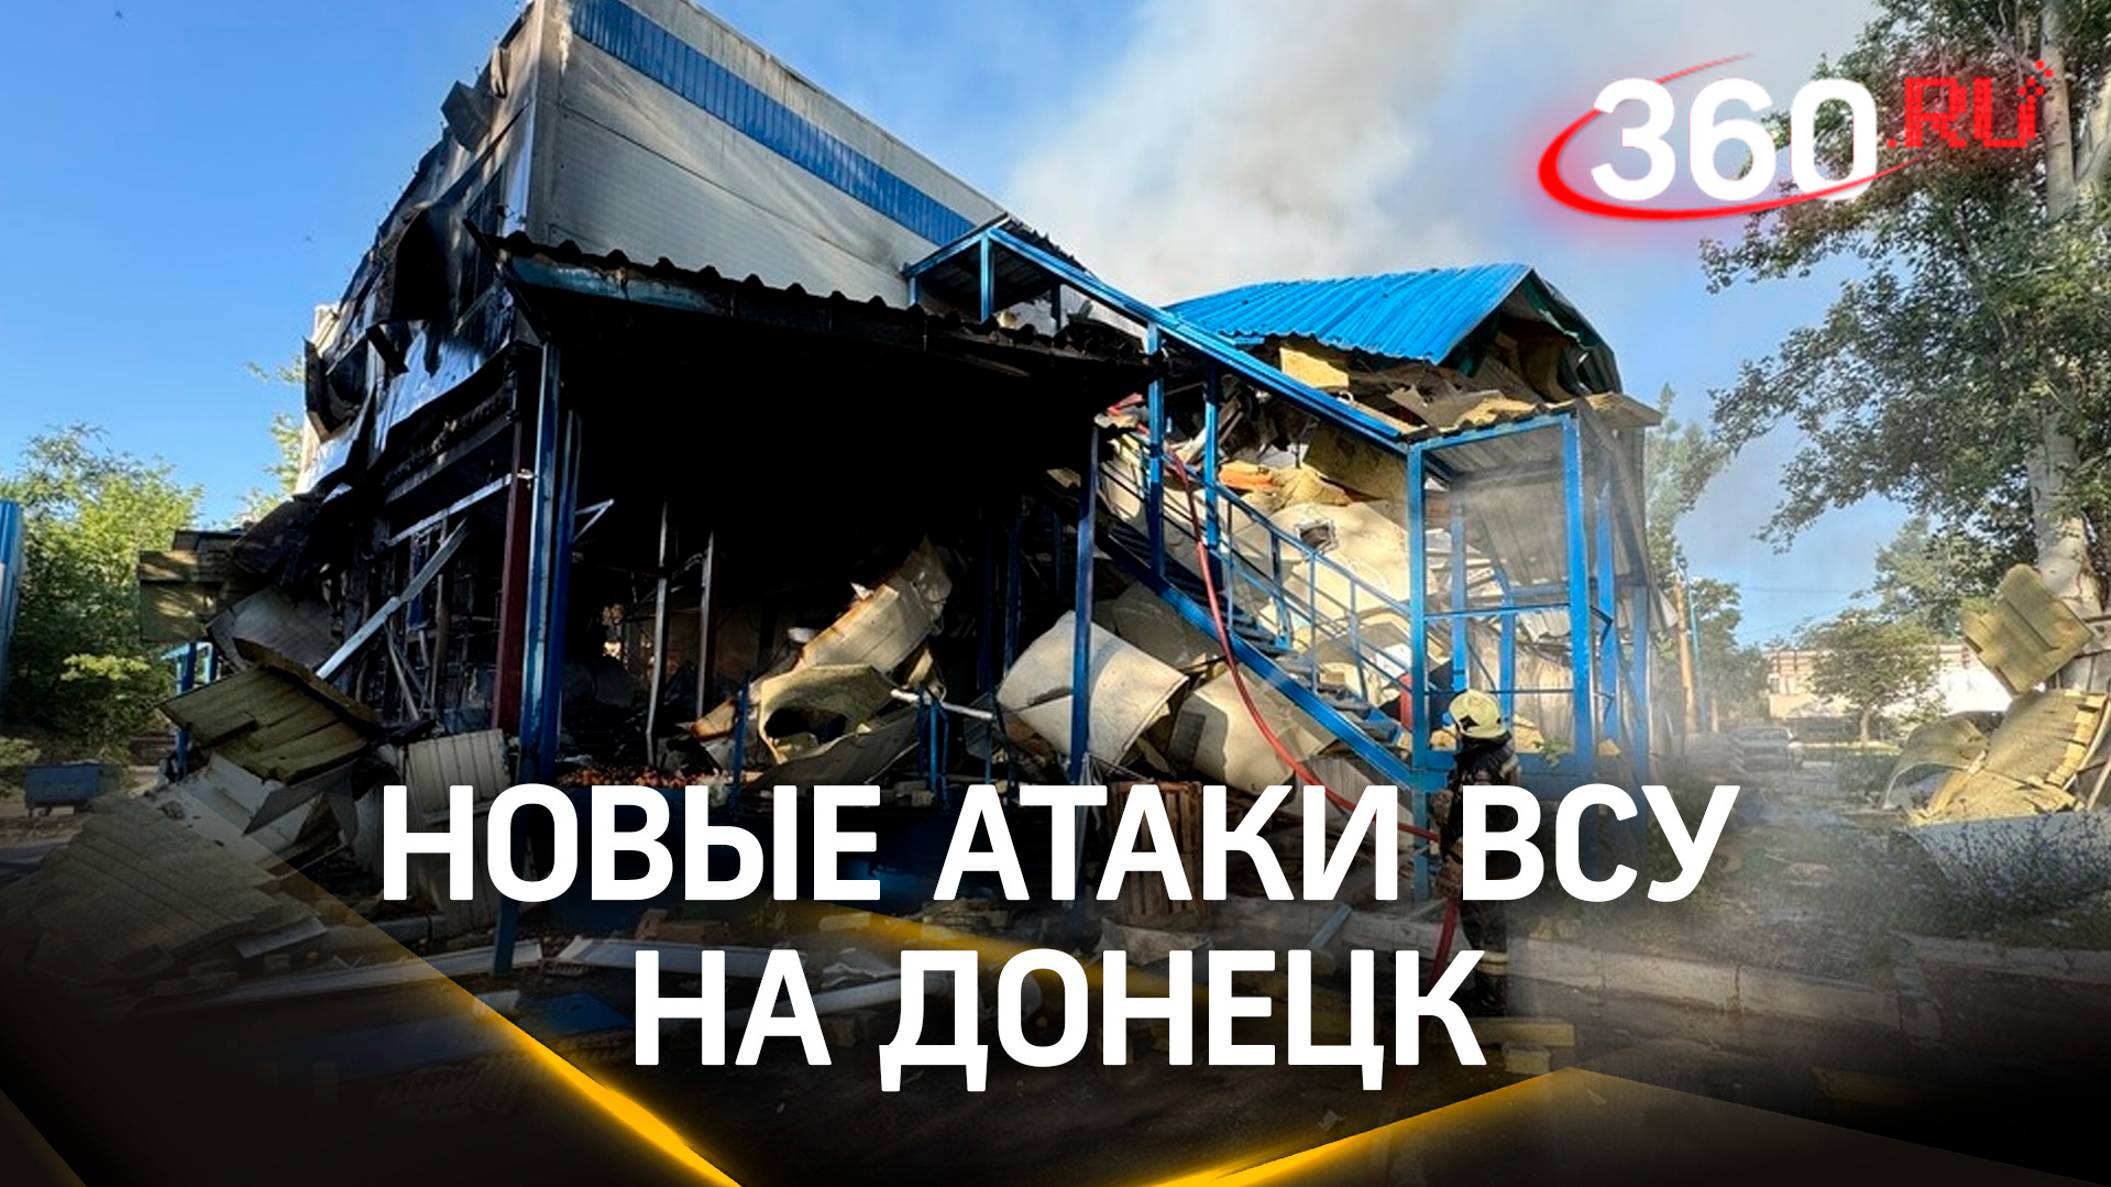 Горящий супермаркет, разрушенные дома и автомобили: новые атаки ВСУ на Донецк